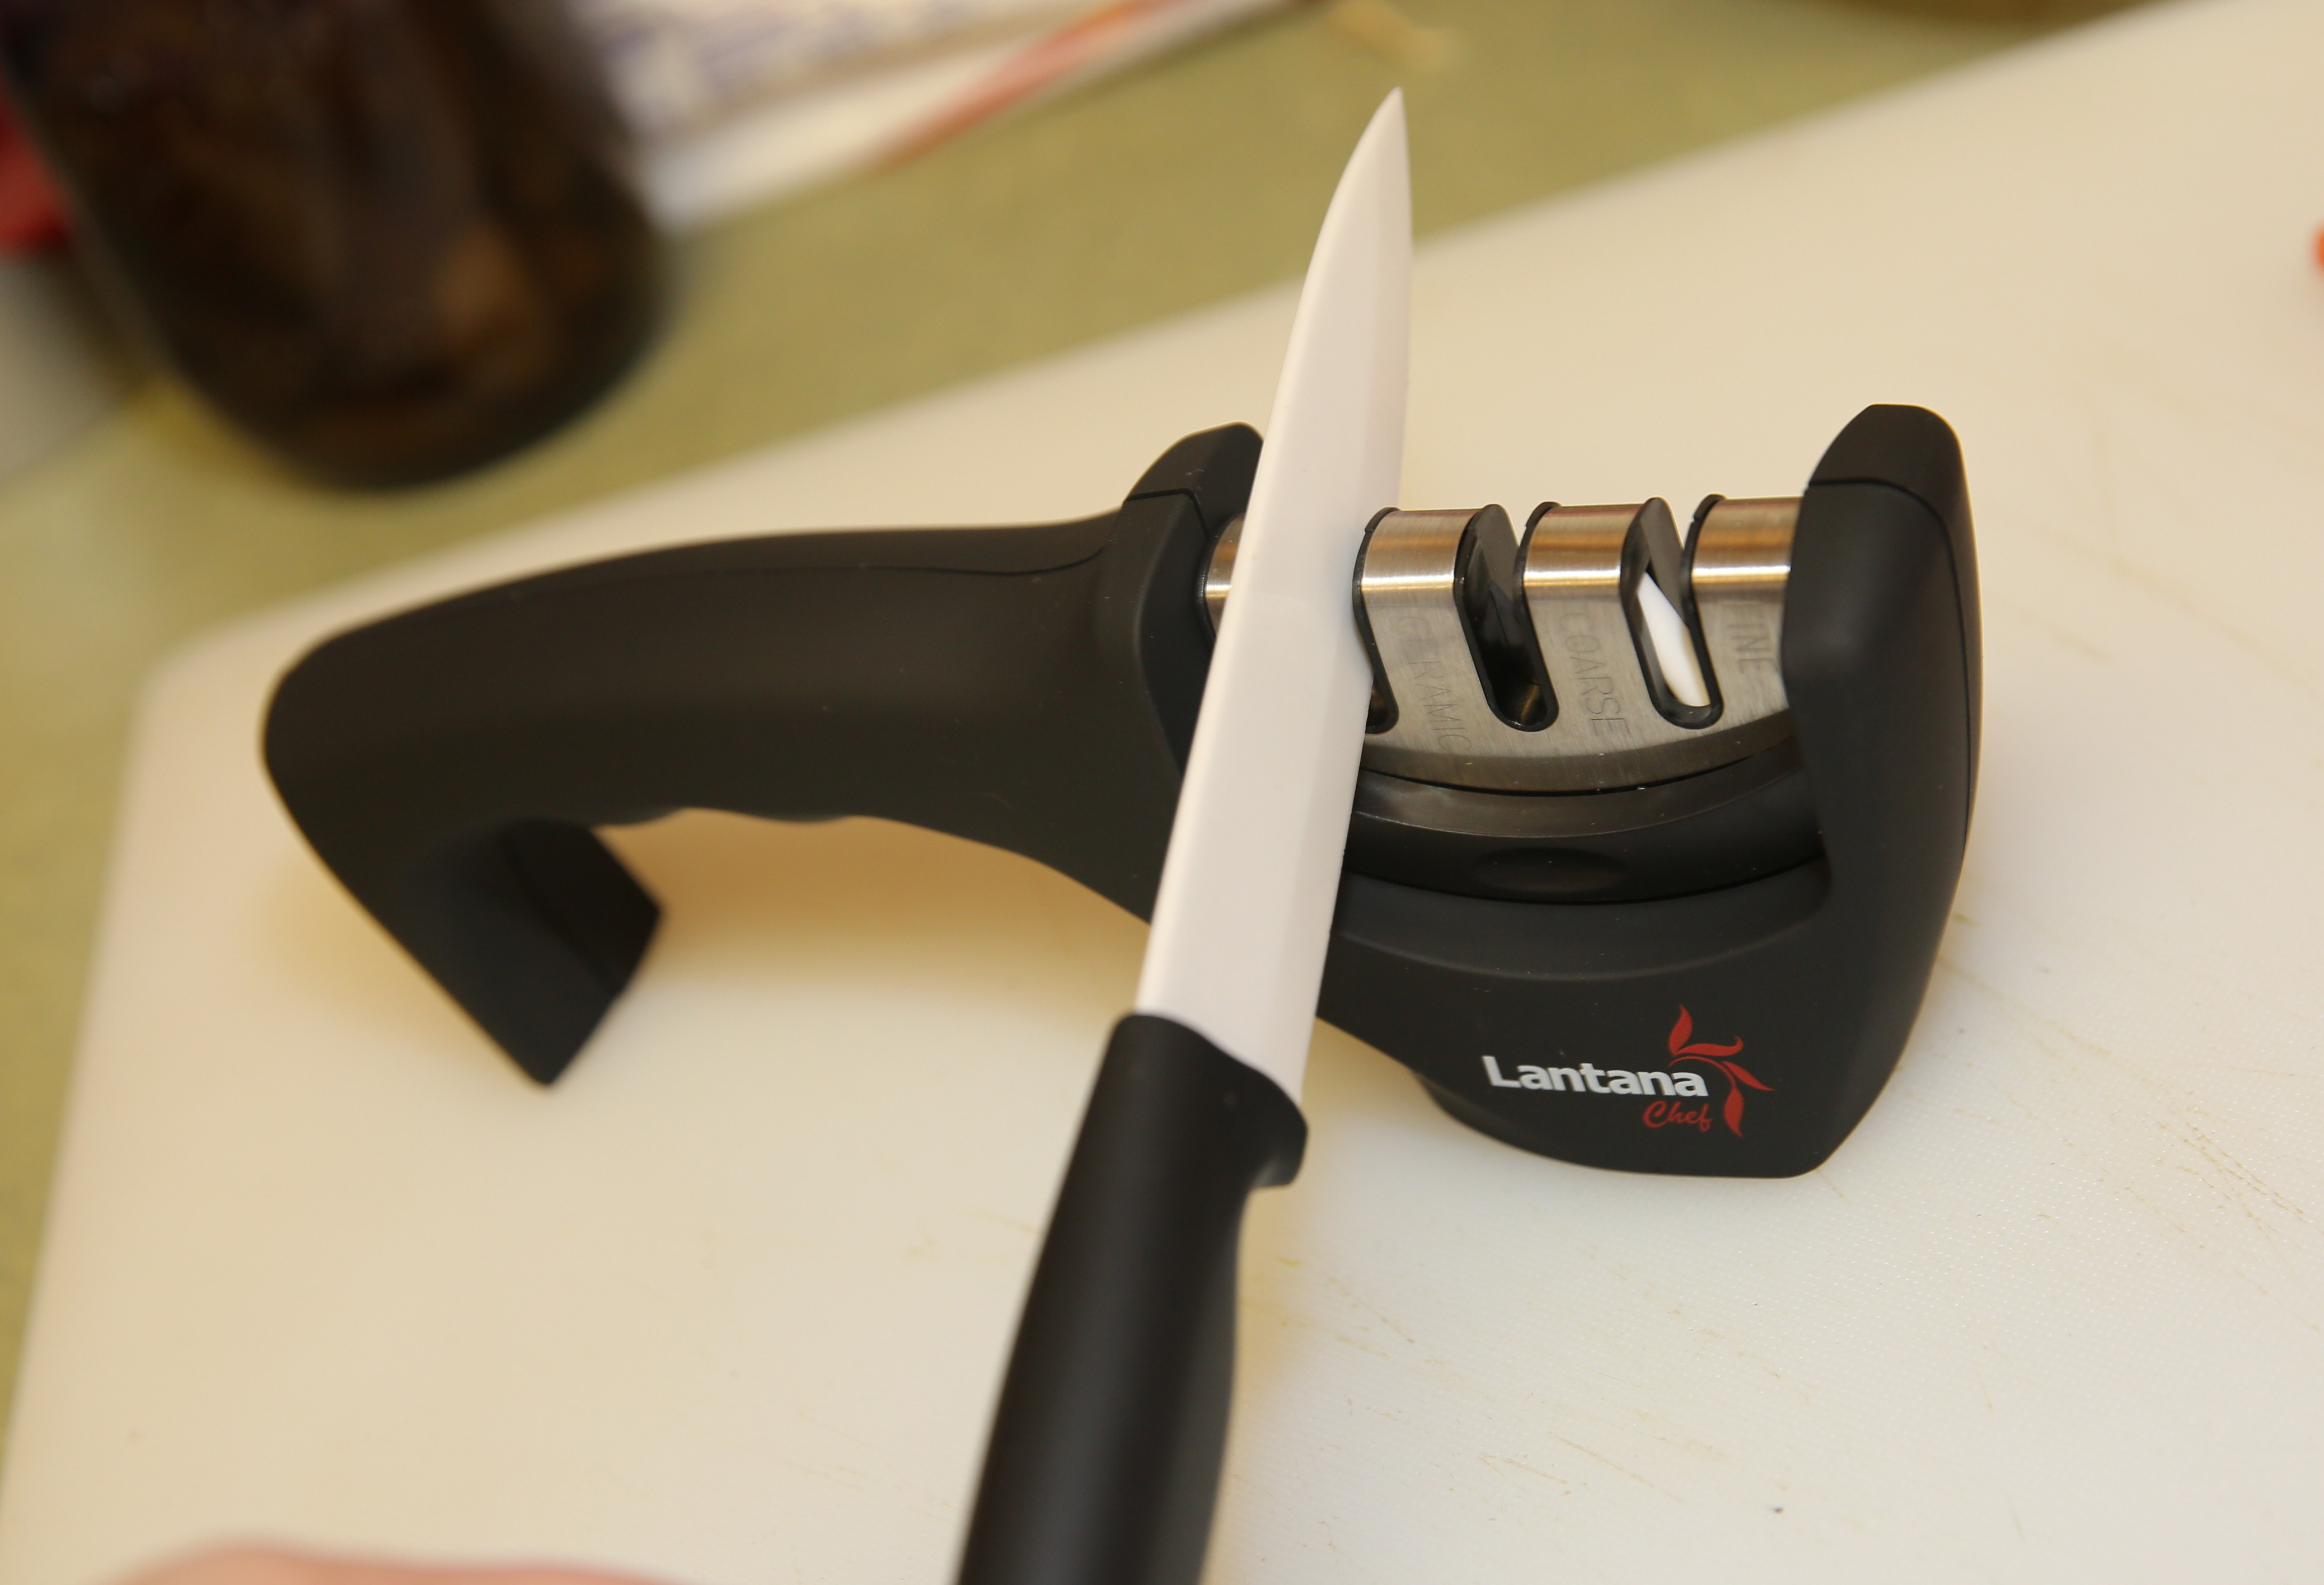 Как наточить керамический нож в домашних условиях?